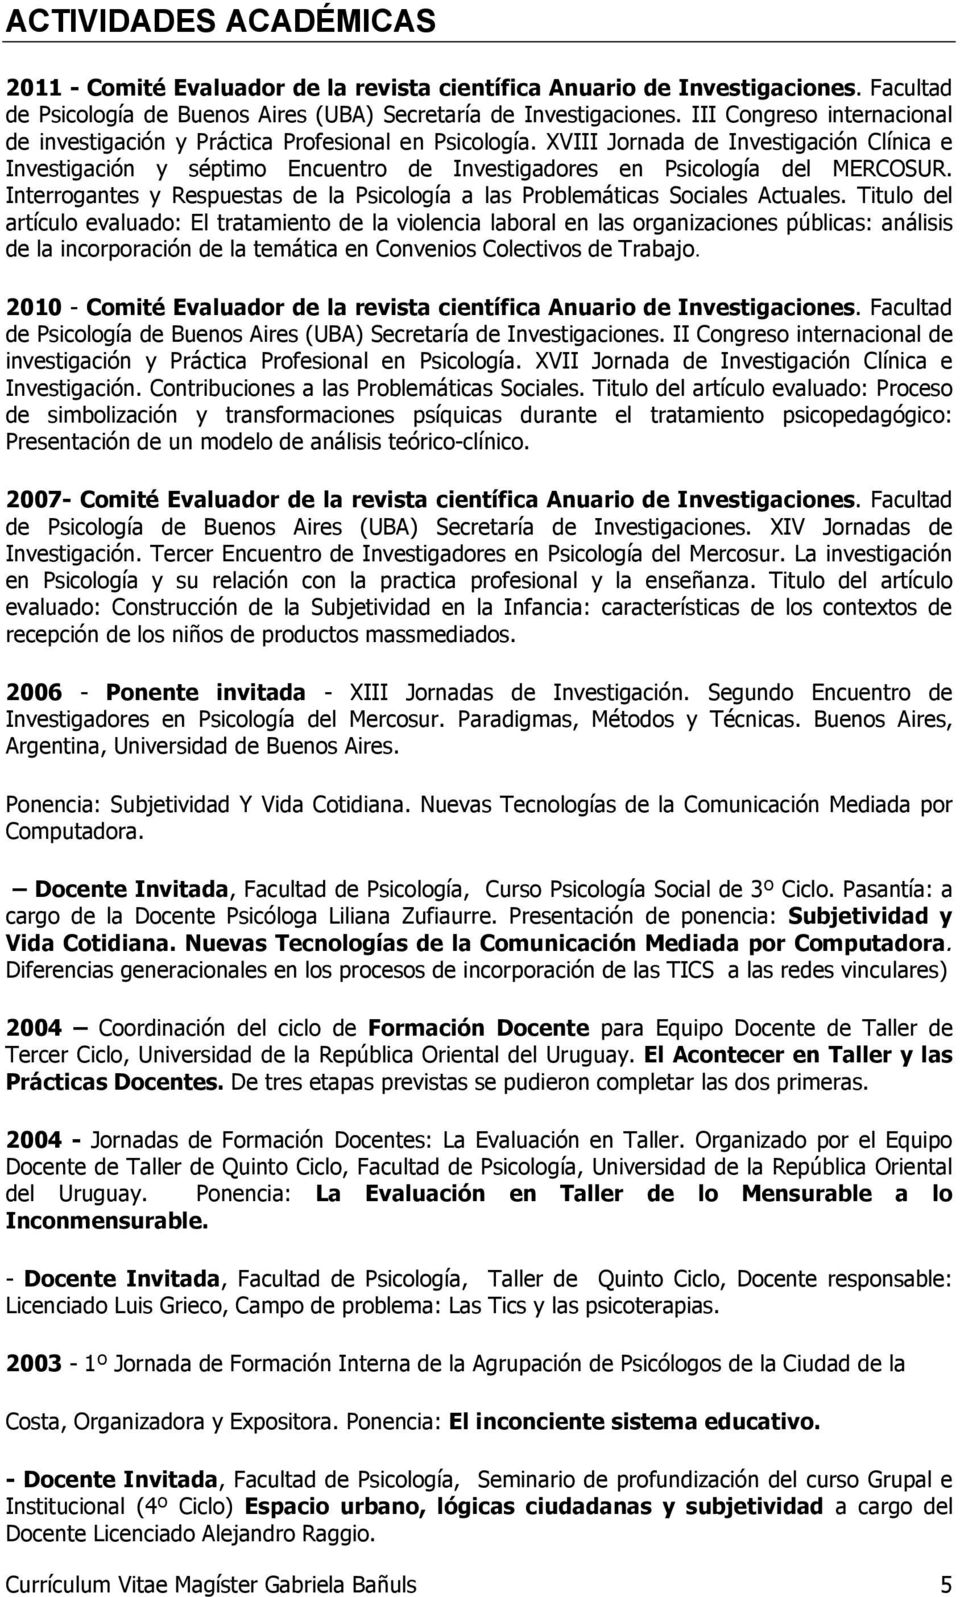 XVIII Jornada de Investigación Clínica e Investigación y séptimo Encuentro de Investigadores en Psicología del MERCOSUR.